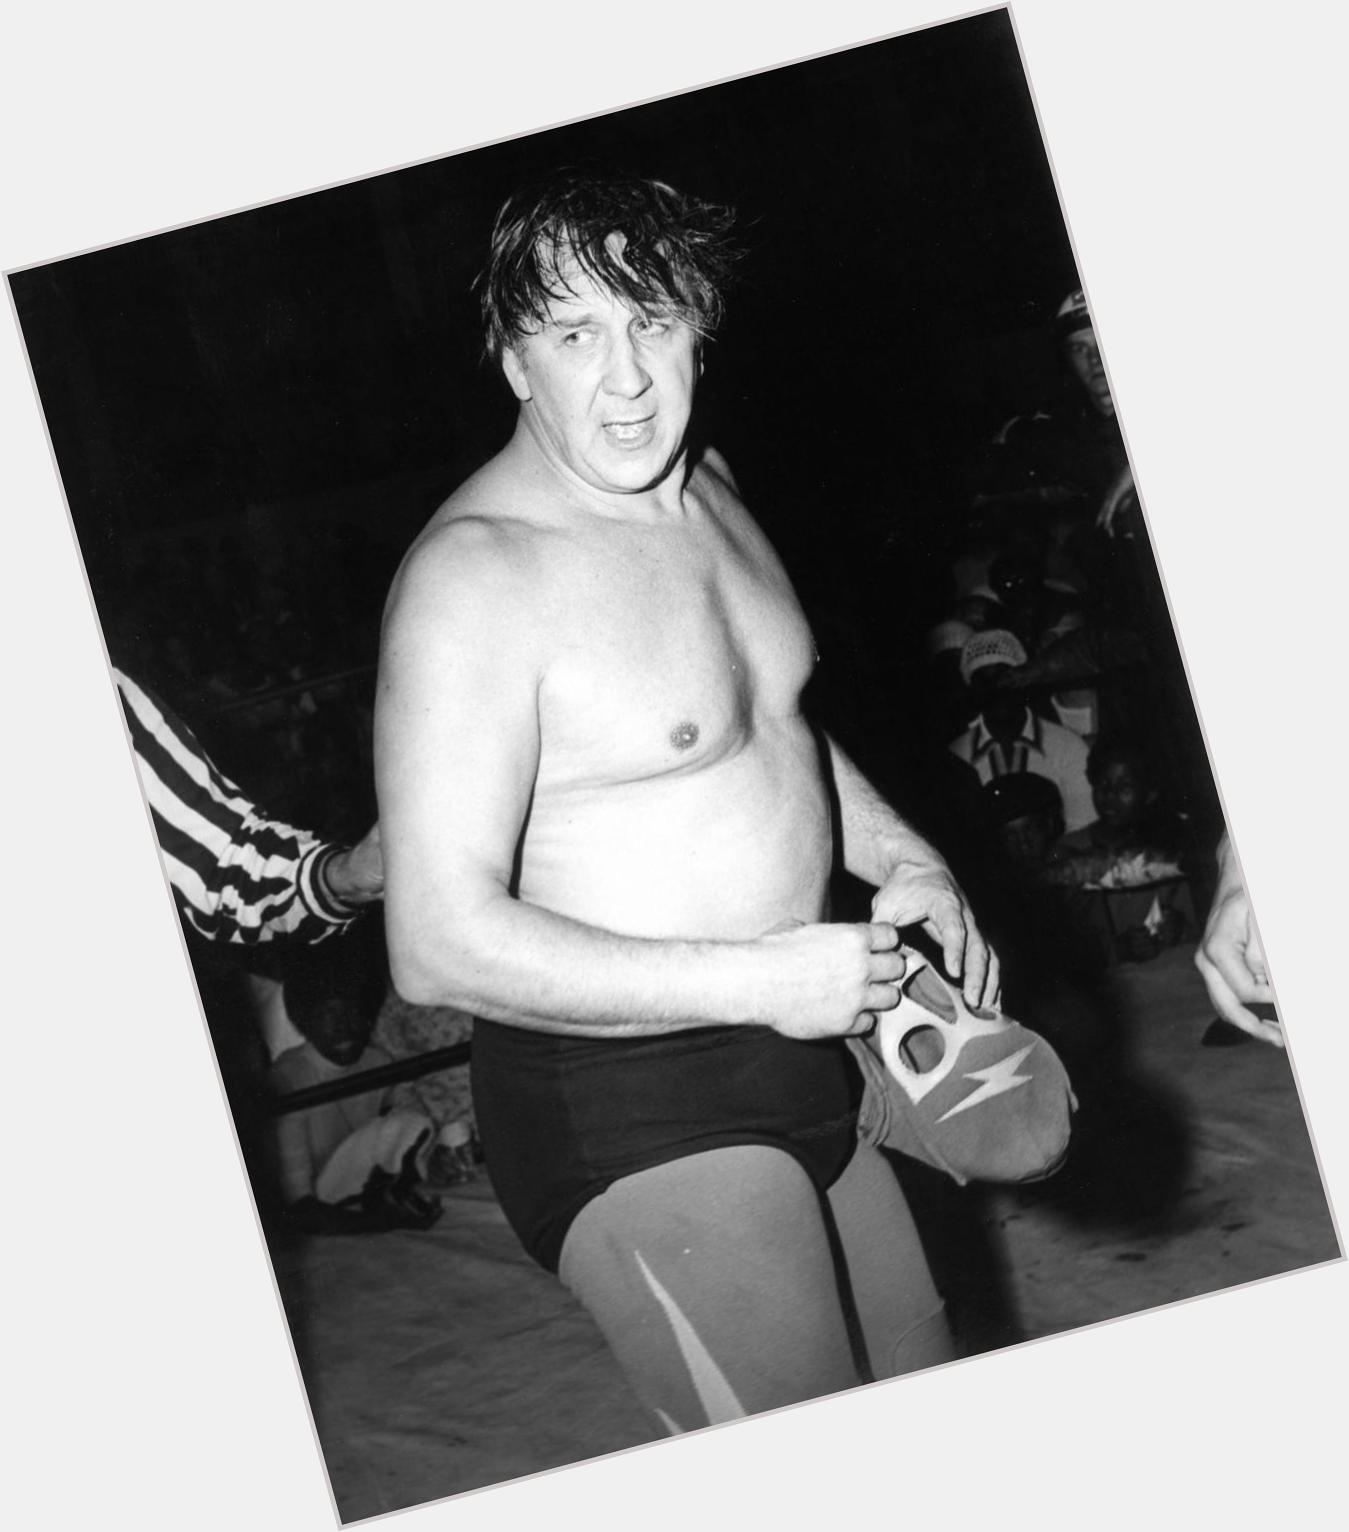 Bob Orton shirtless bikini